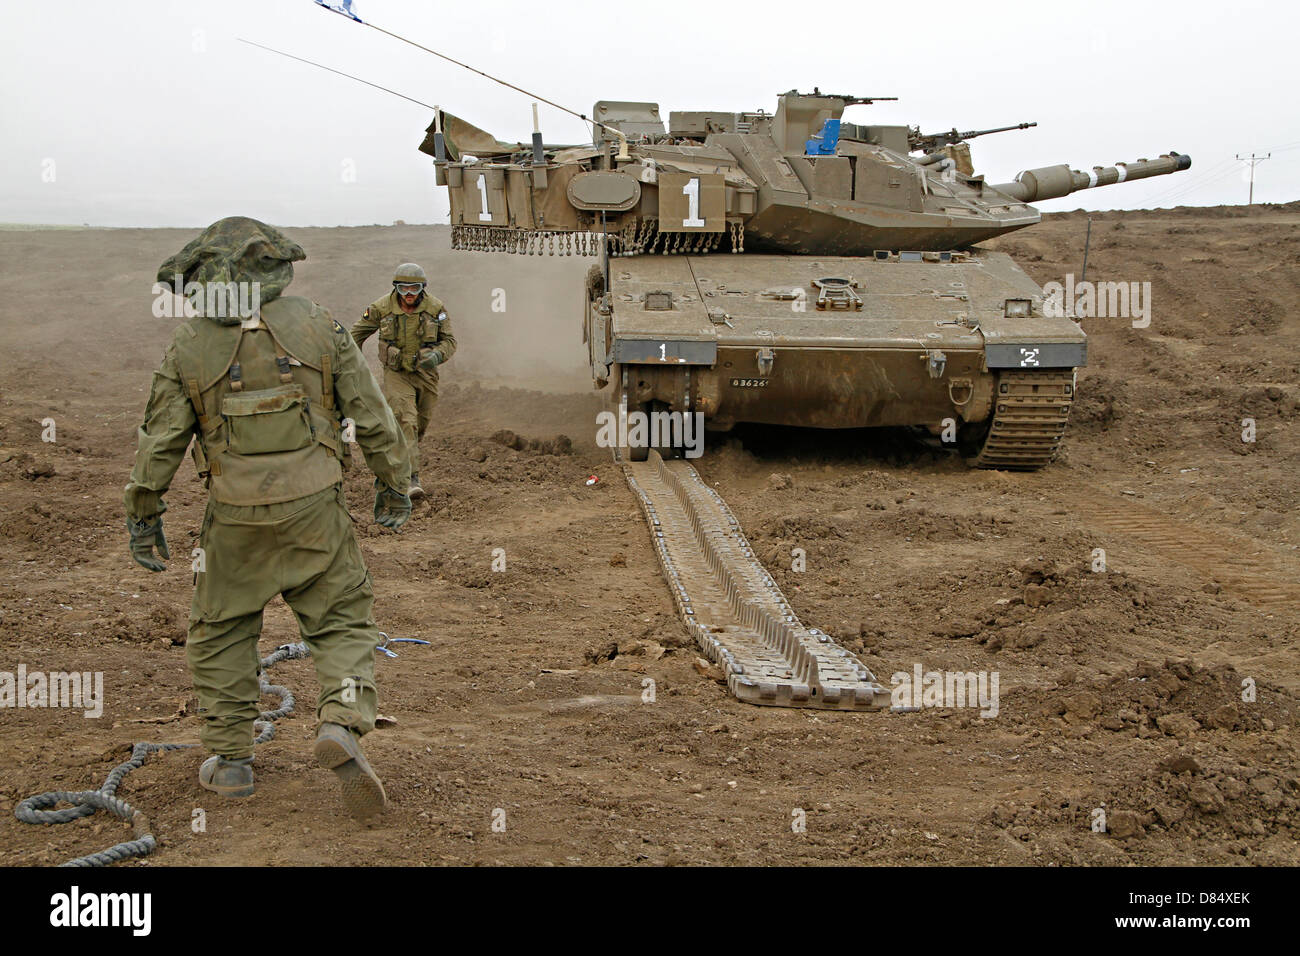 Un Israele Defense Force Merkava Mark IV battaglia principale serbatoio durante la sostituzione dei cingoli trapano. Foto Stock